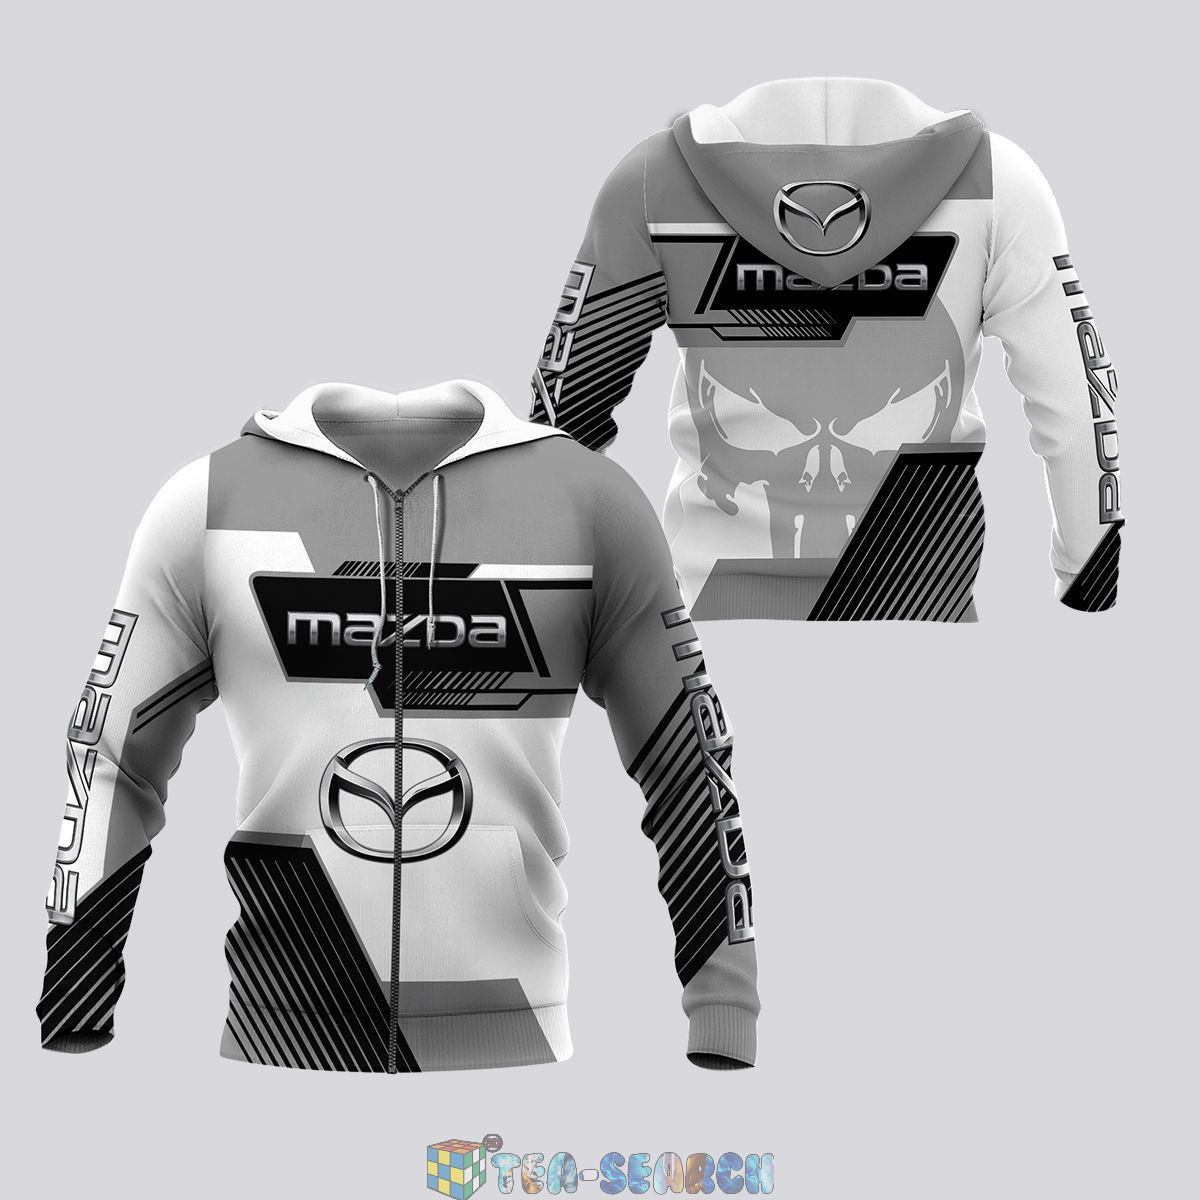 Mazda Skull ver 1 hoodie and t-shirt